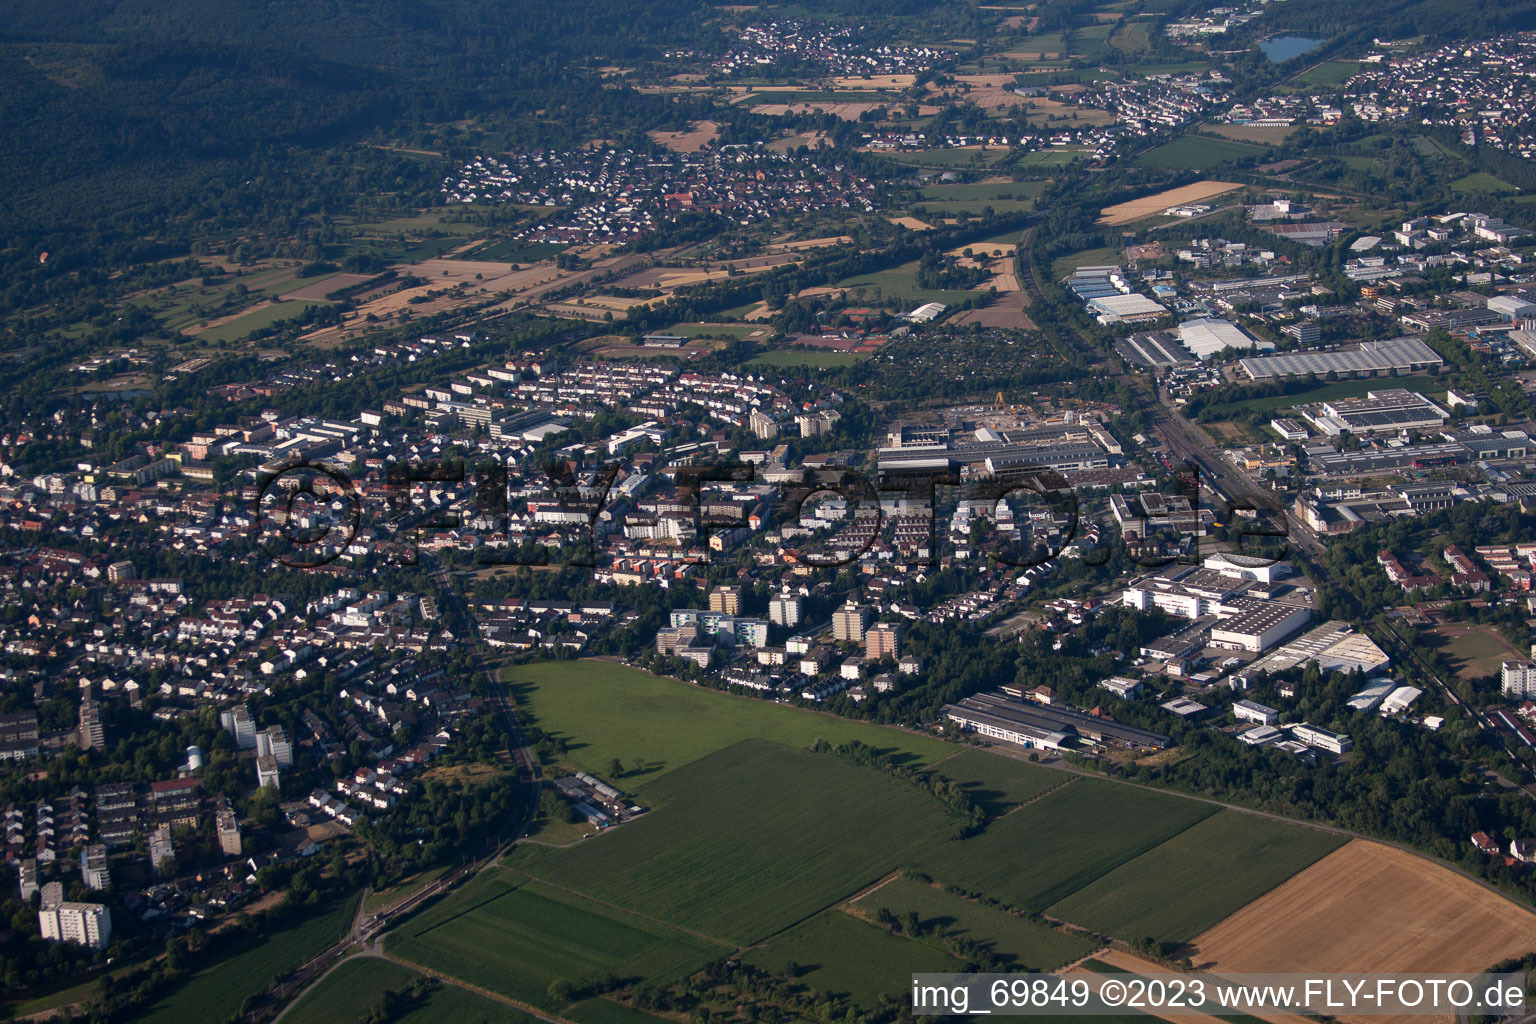 Ettlingen im Bundesland Baden-Württemberg, Deutschland aus der Luft betrachtet